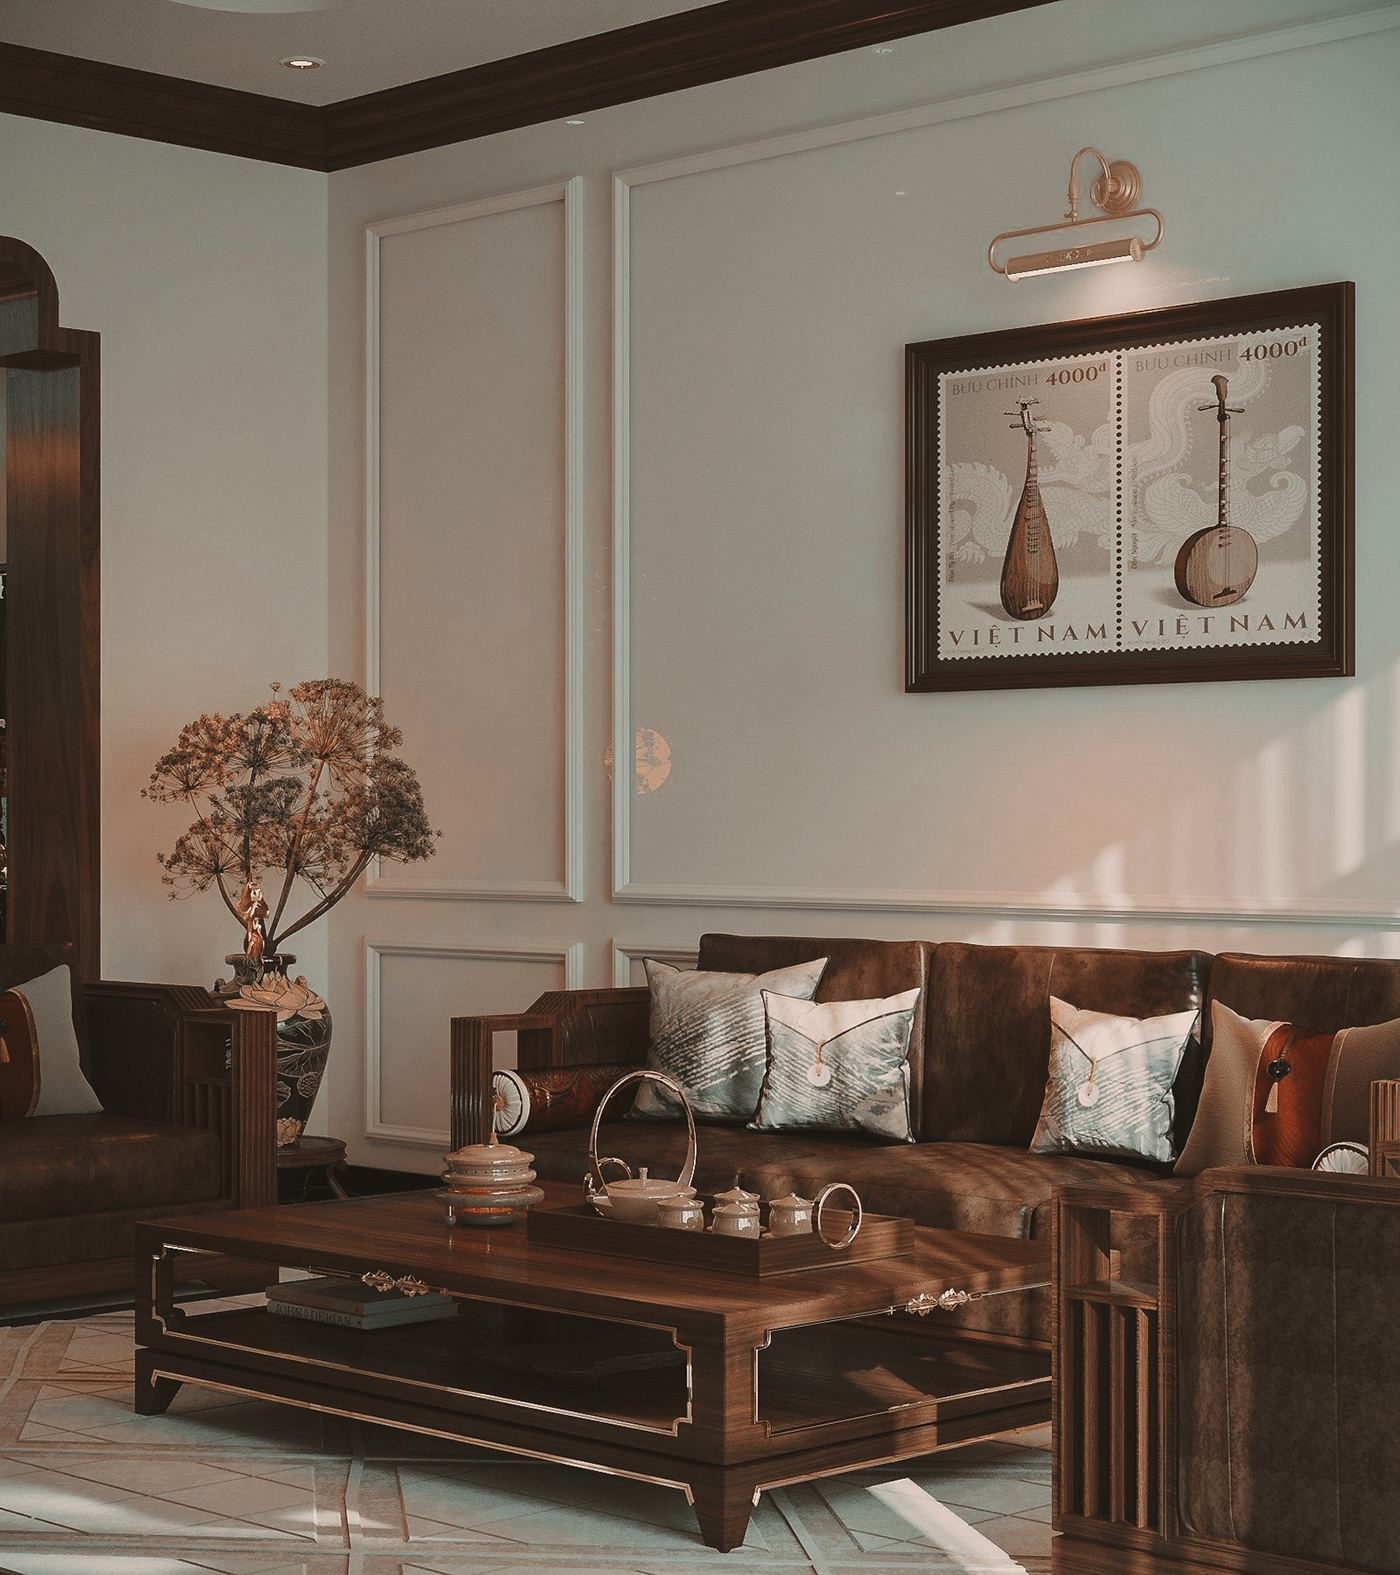 indochine walnut living room kitchen interior design  corona render  3ds max architecture